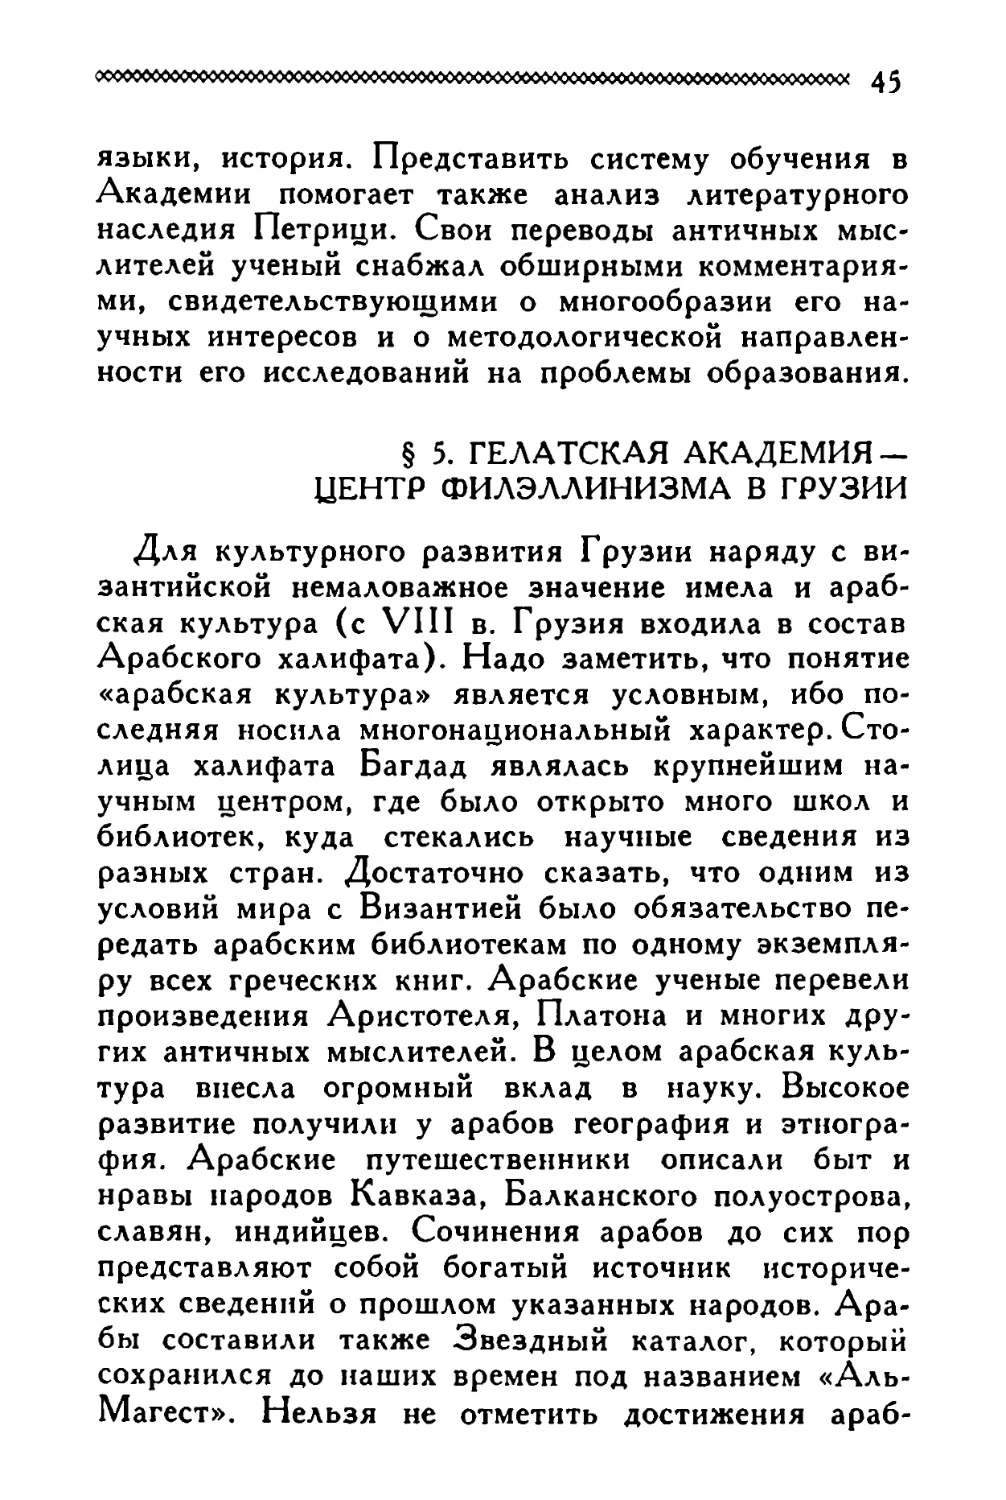 § 5. Гелатская Академия — центр филэллинизма в Грузии